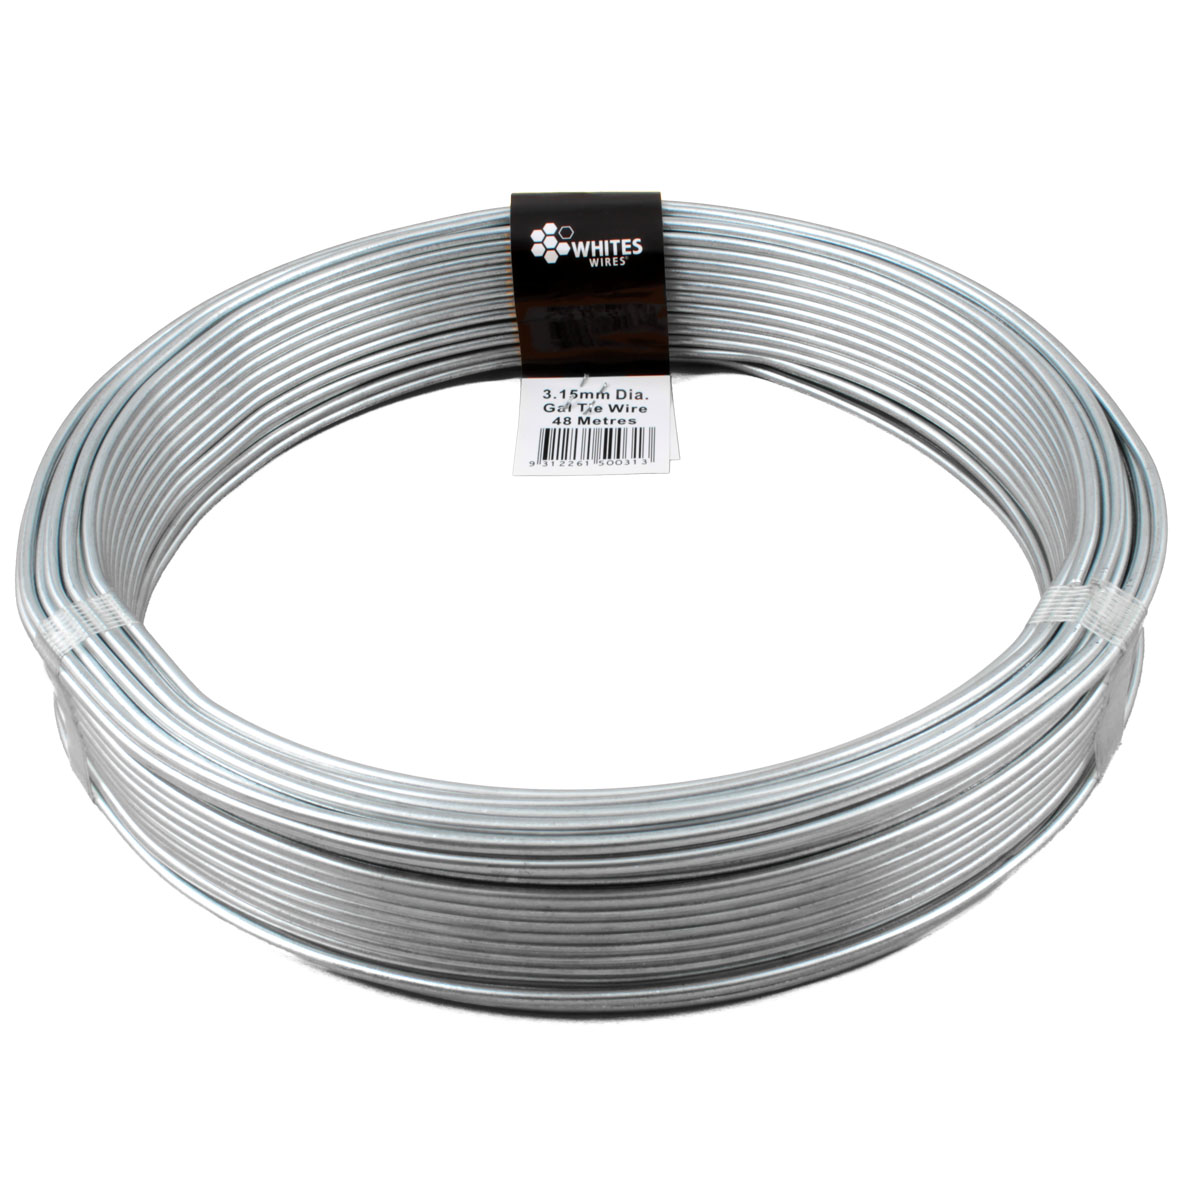 50031 - tie wire gal 48m x 3.15mm